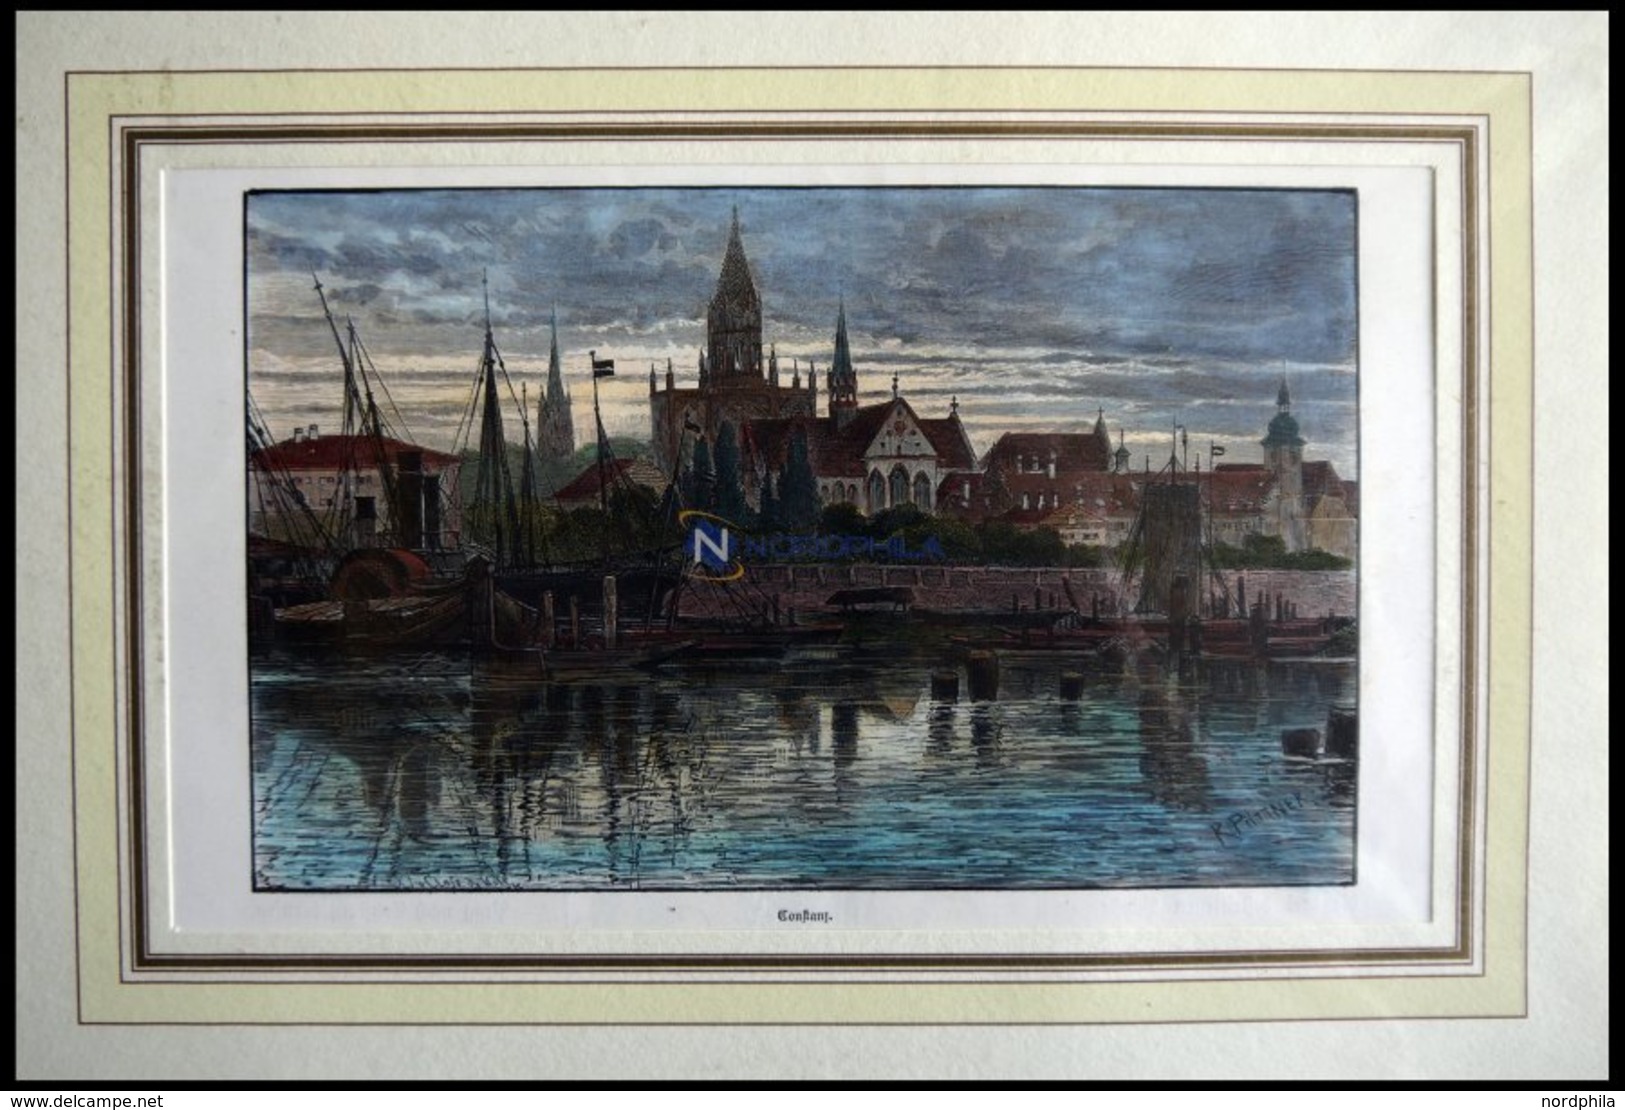 KONSTANZ, Teilansicht übers Wasser Gesehen, Kolorierter Holzstich Von Püttner Um 1880 - Lithographies